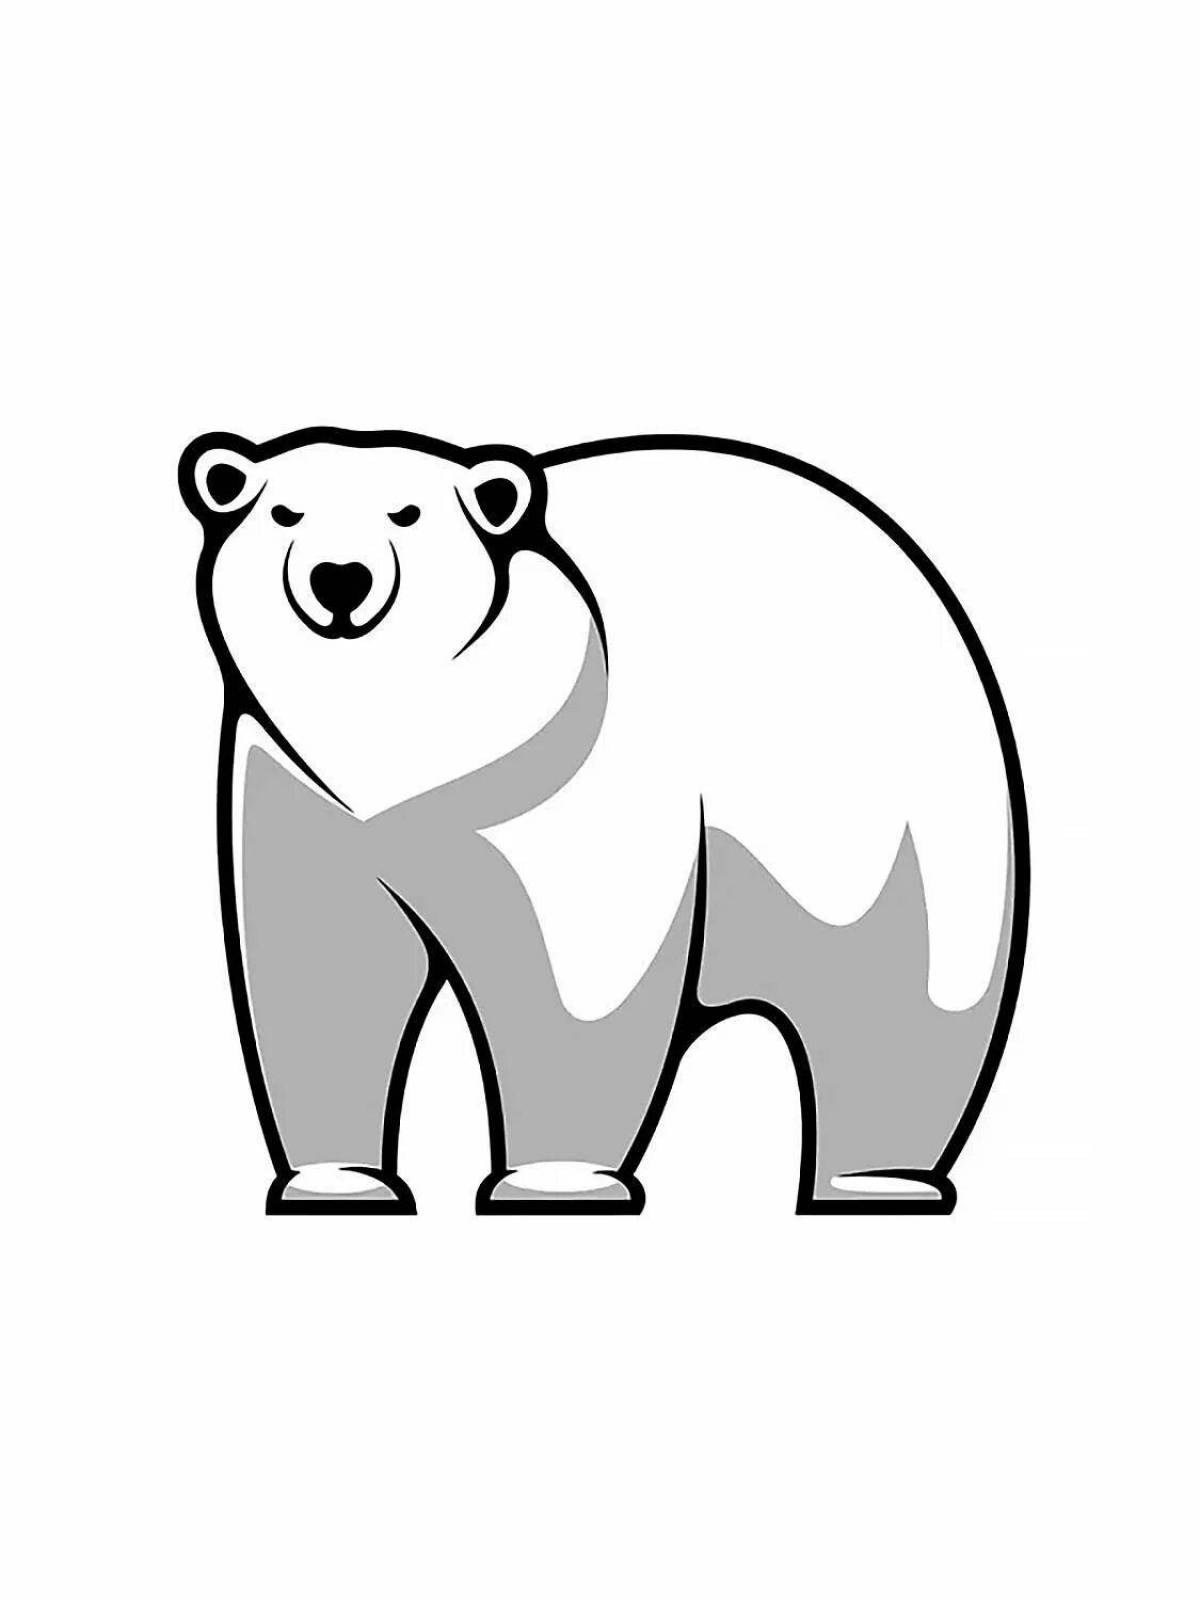 Russian symbol bear #10